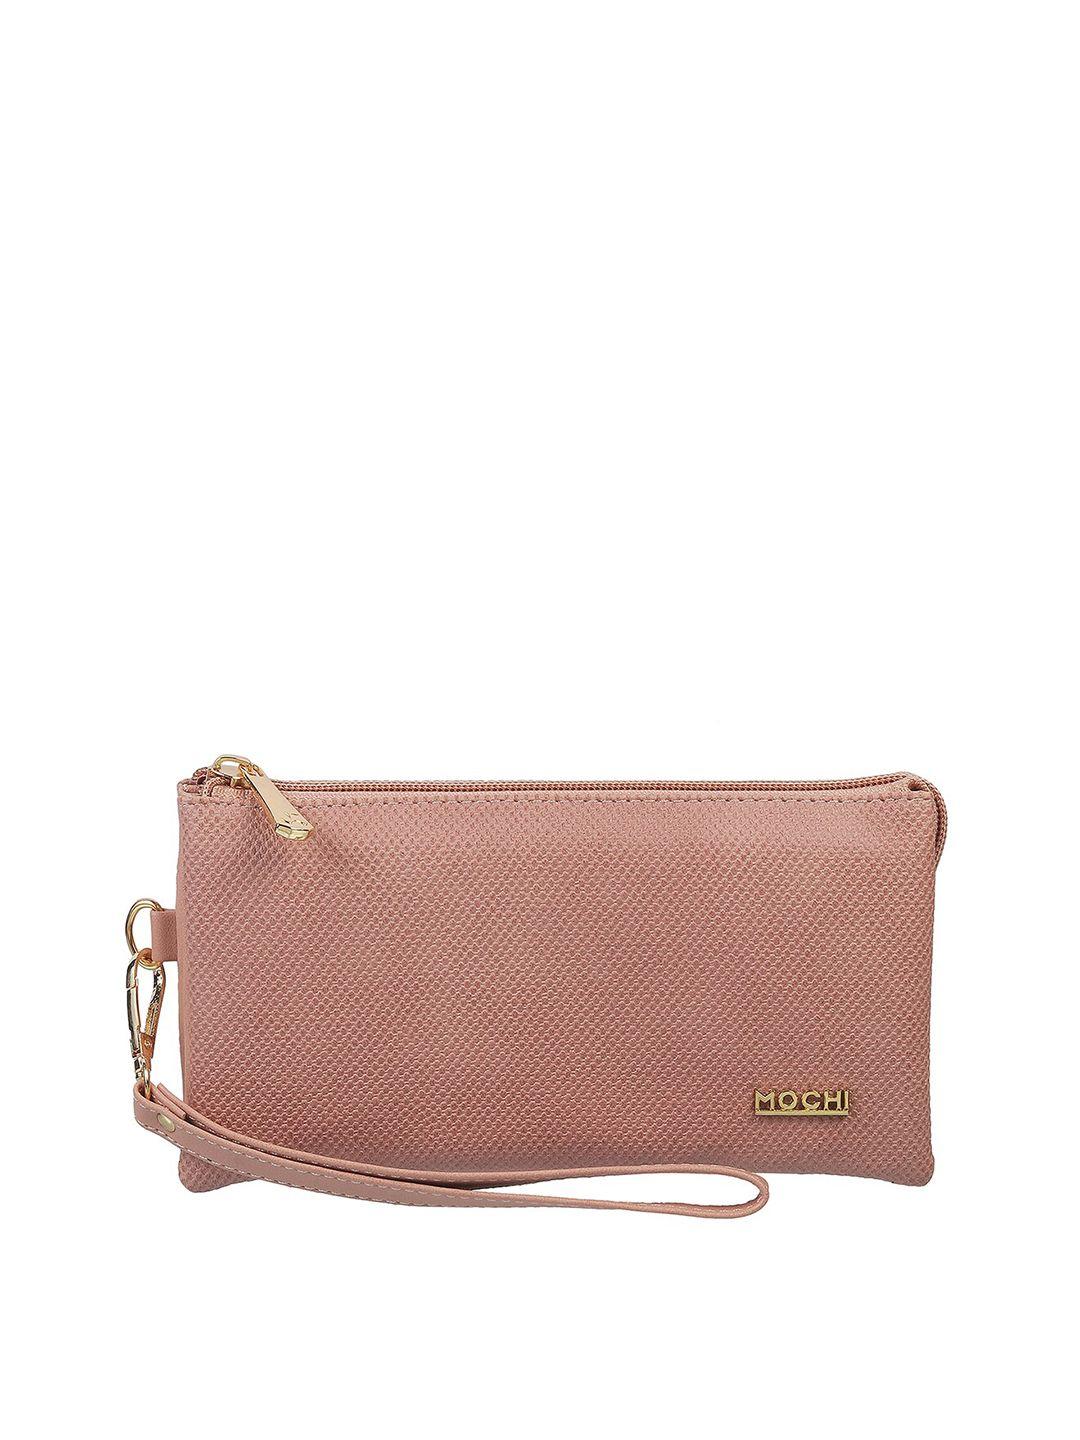 mochi peach-coloured purse clutch